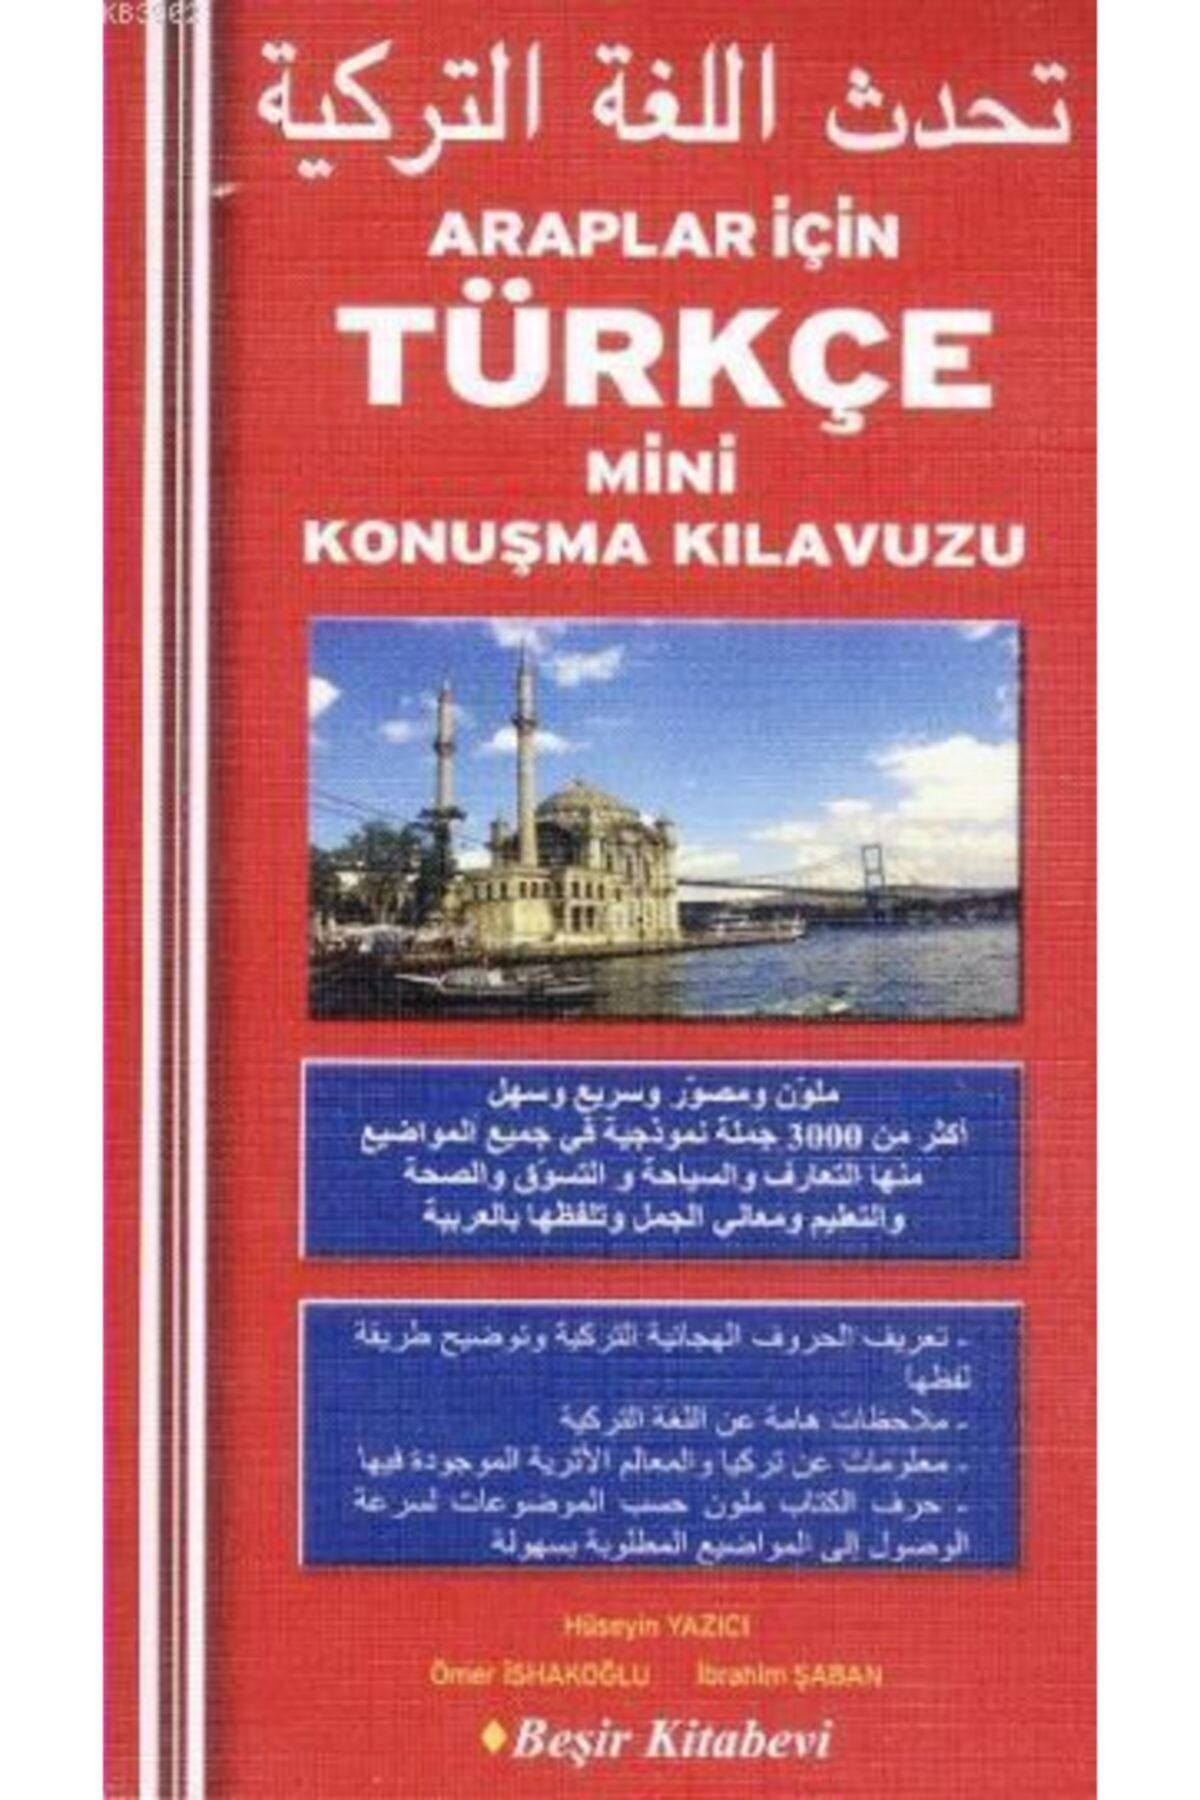 Beşir Kitabevi Araplar Için Türkçe Mini Konuşma Kılavuzu